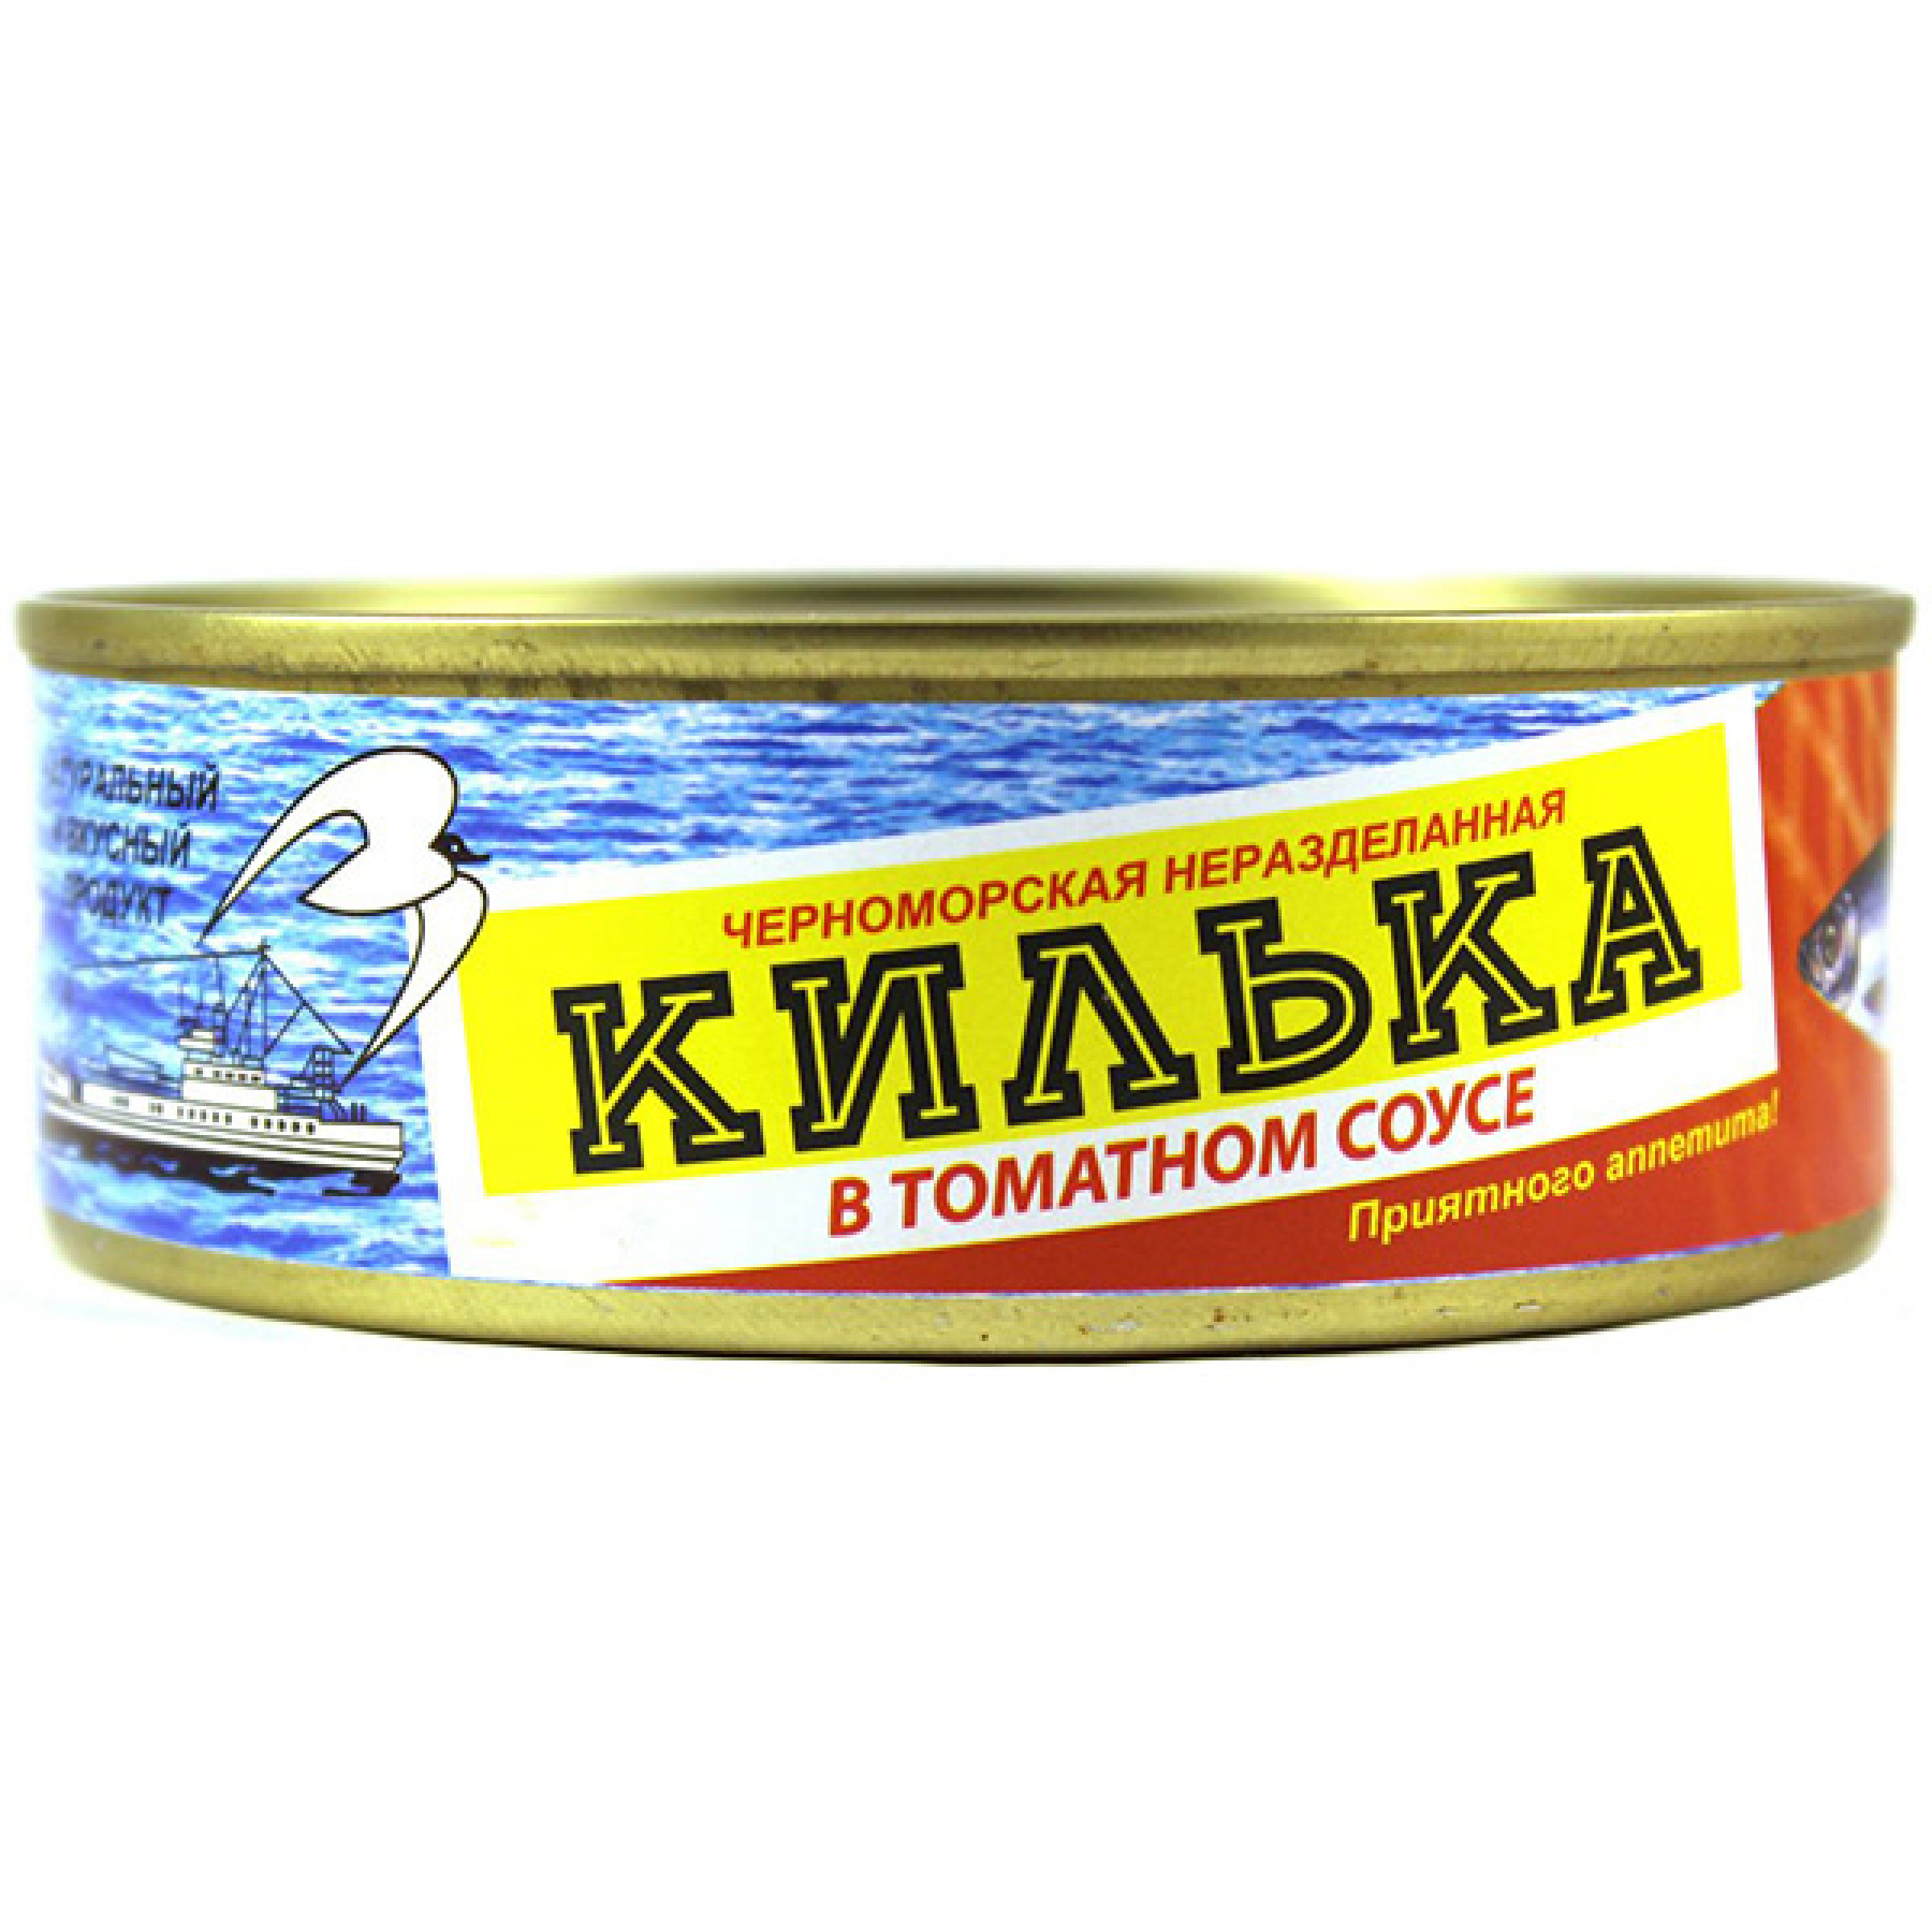 Килька в томатном соусе неразделанная обжаренная Темрюк, 240 г